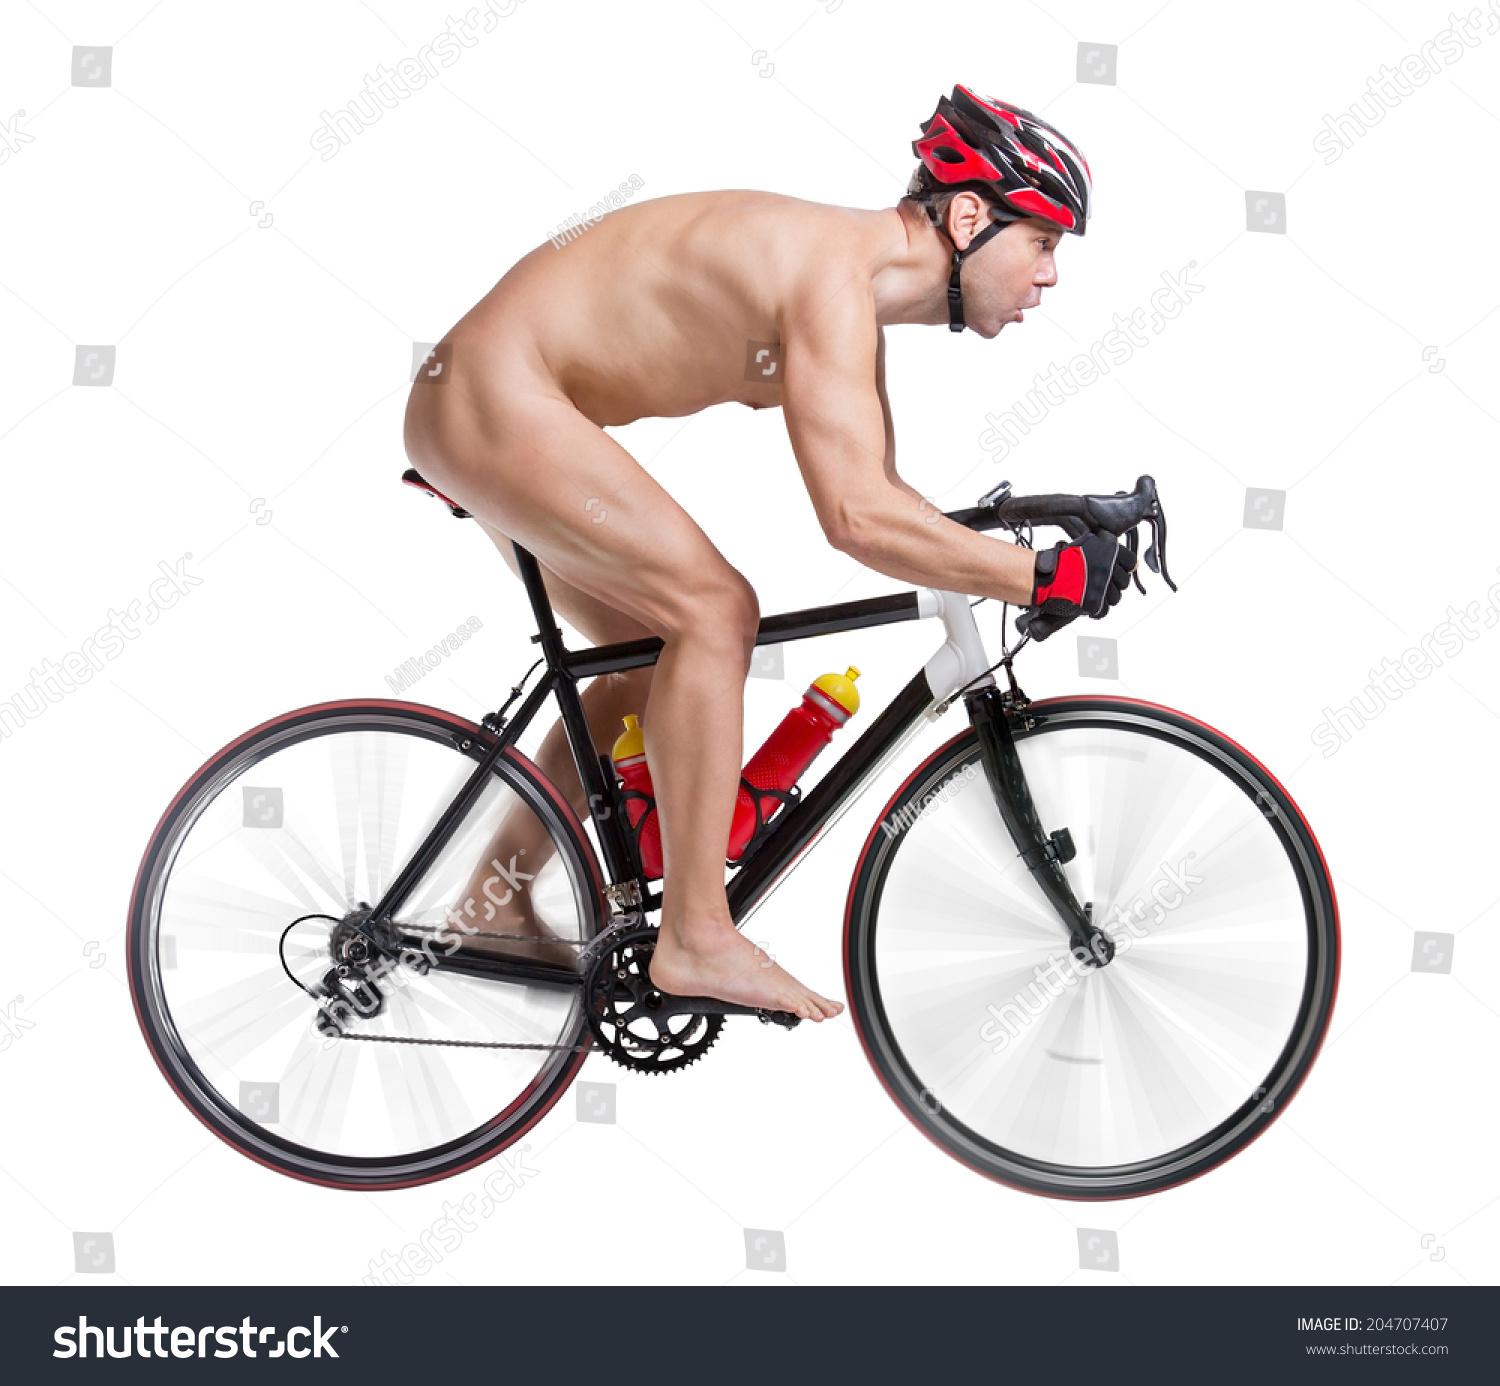 Naked Cyclist Stockfotos Bilder Und Fotografie Shutterstock